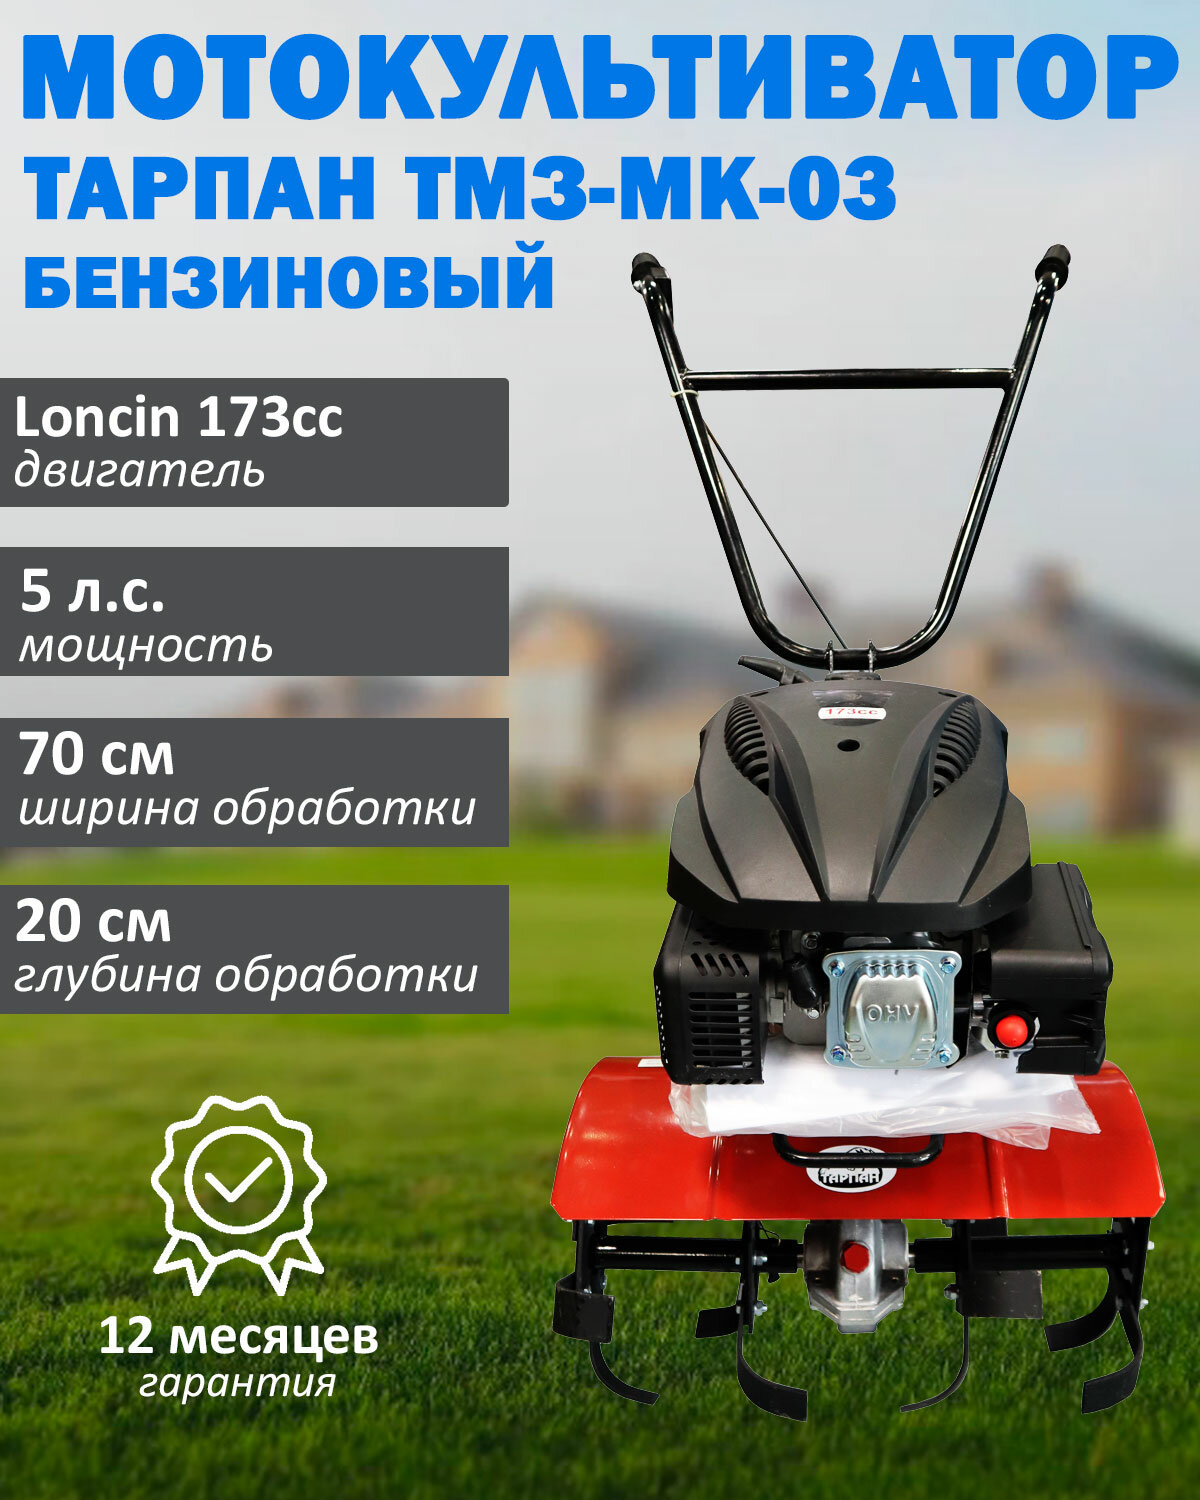 Мотокультиватор бензиновый Тарпан ТМЗ-МК-03 с двигателем Loncin 173cc, мощность 5 л. с, объем 173 куб. см